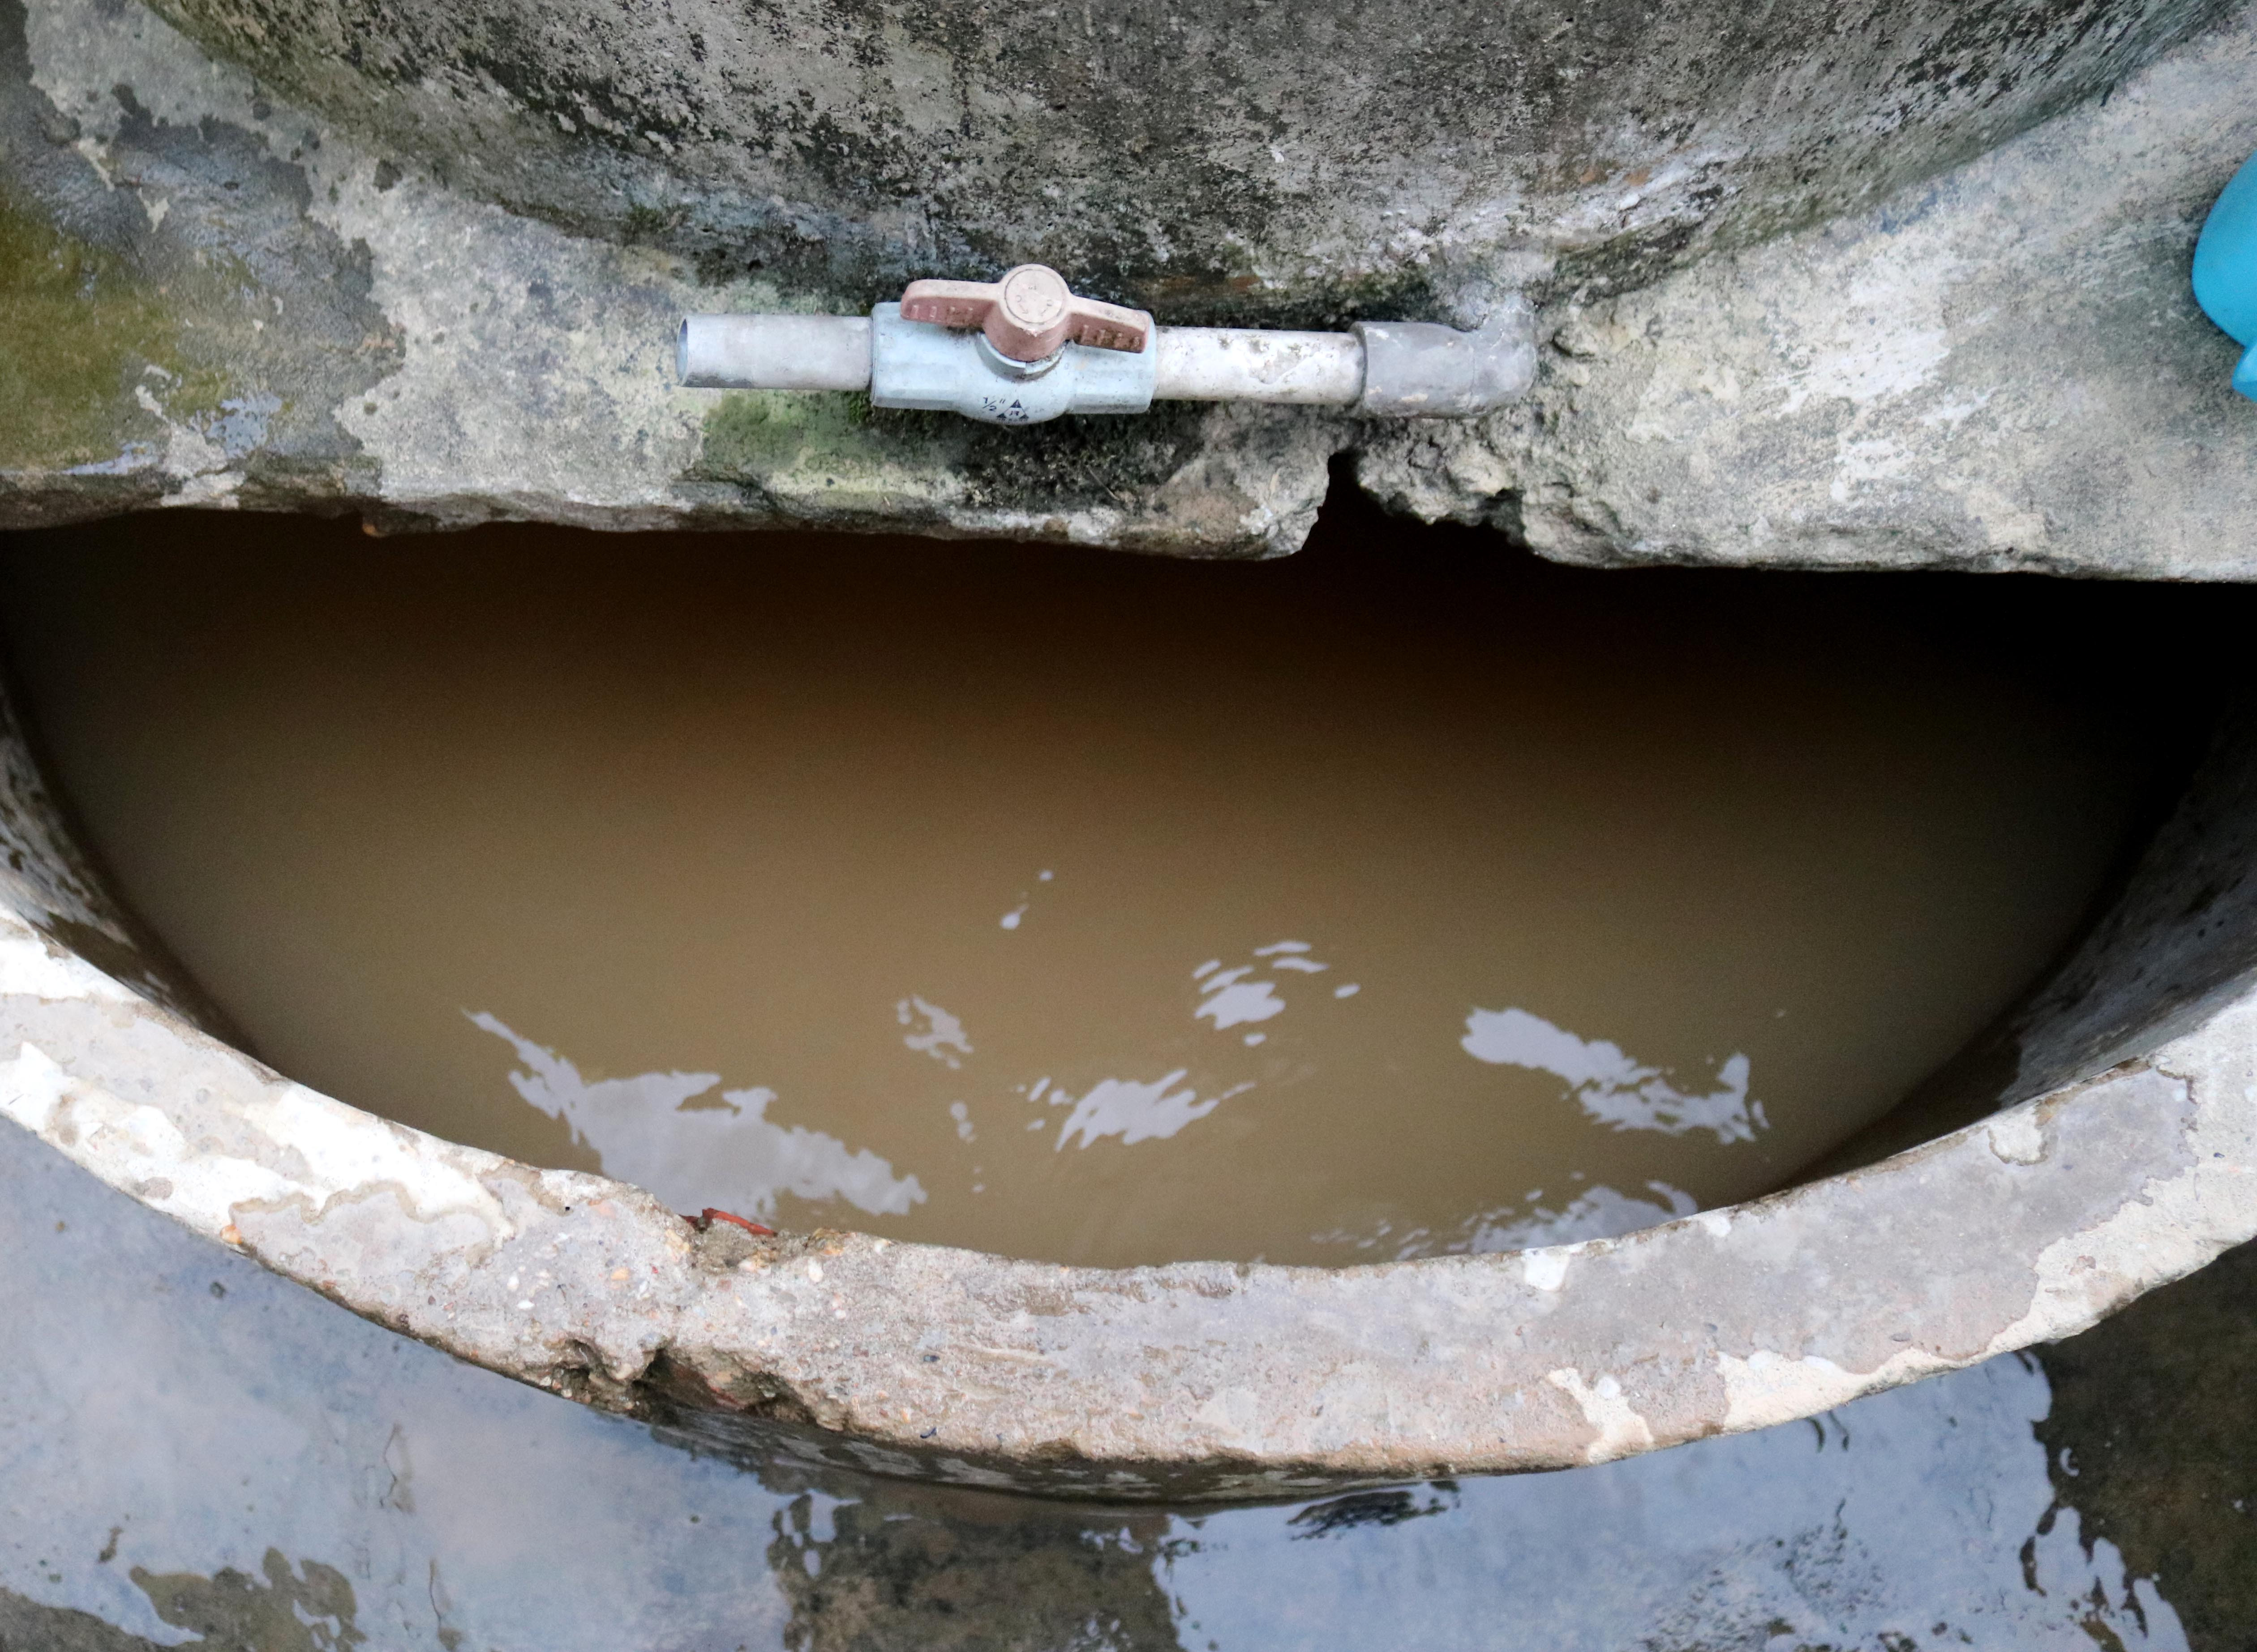 Nước sạch đang là nhu cầu bức thiết của bà con. Nhiều hộ dân ở khối 1 thị trấn Đô Lương phải múc nước sông Lam đang đỏ ngầu bùn đất về lắng để sinh hoạt.